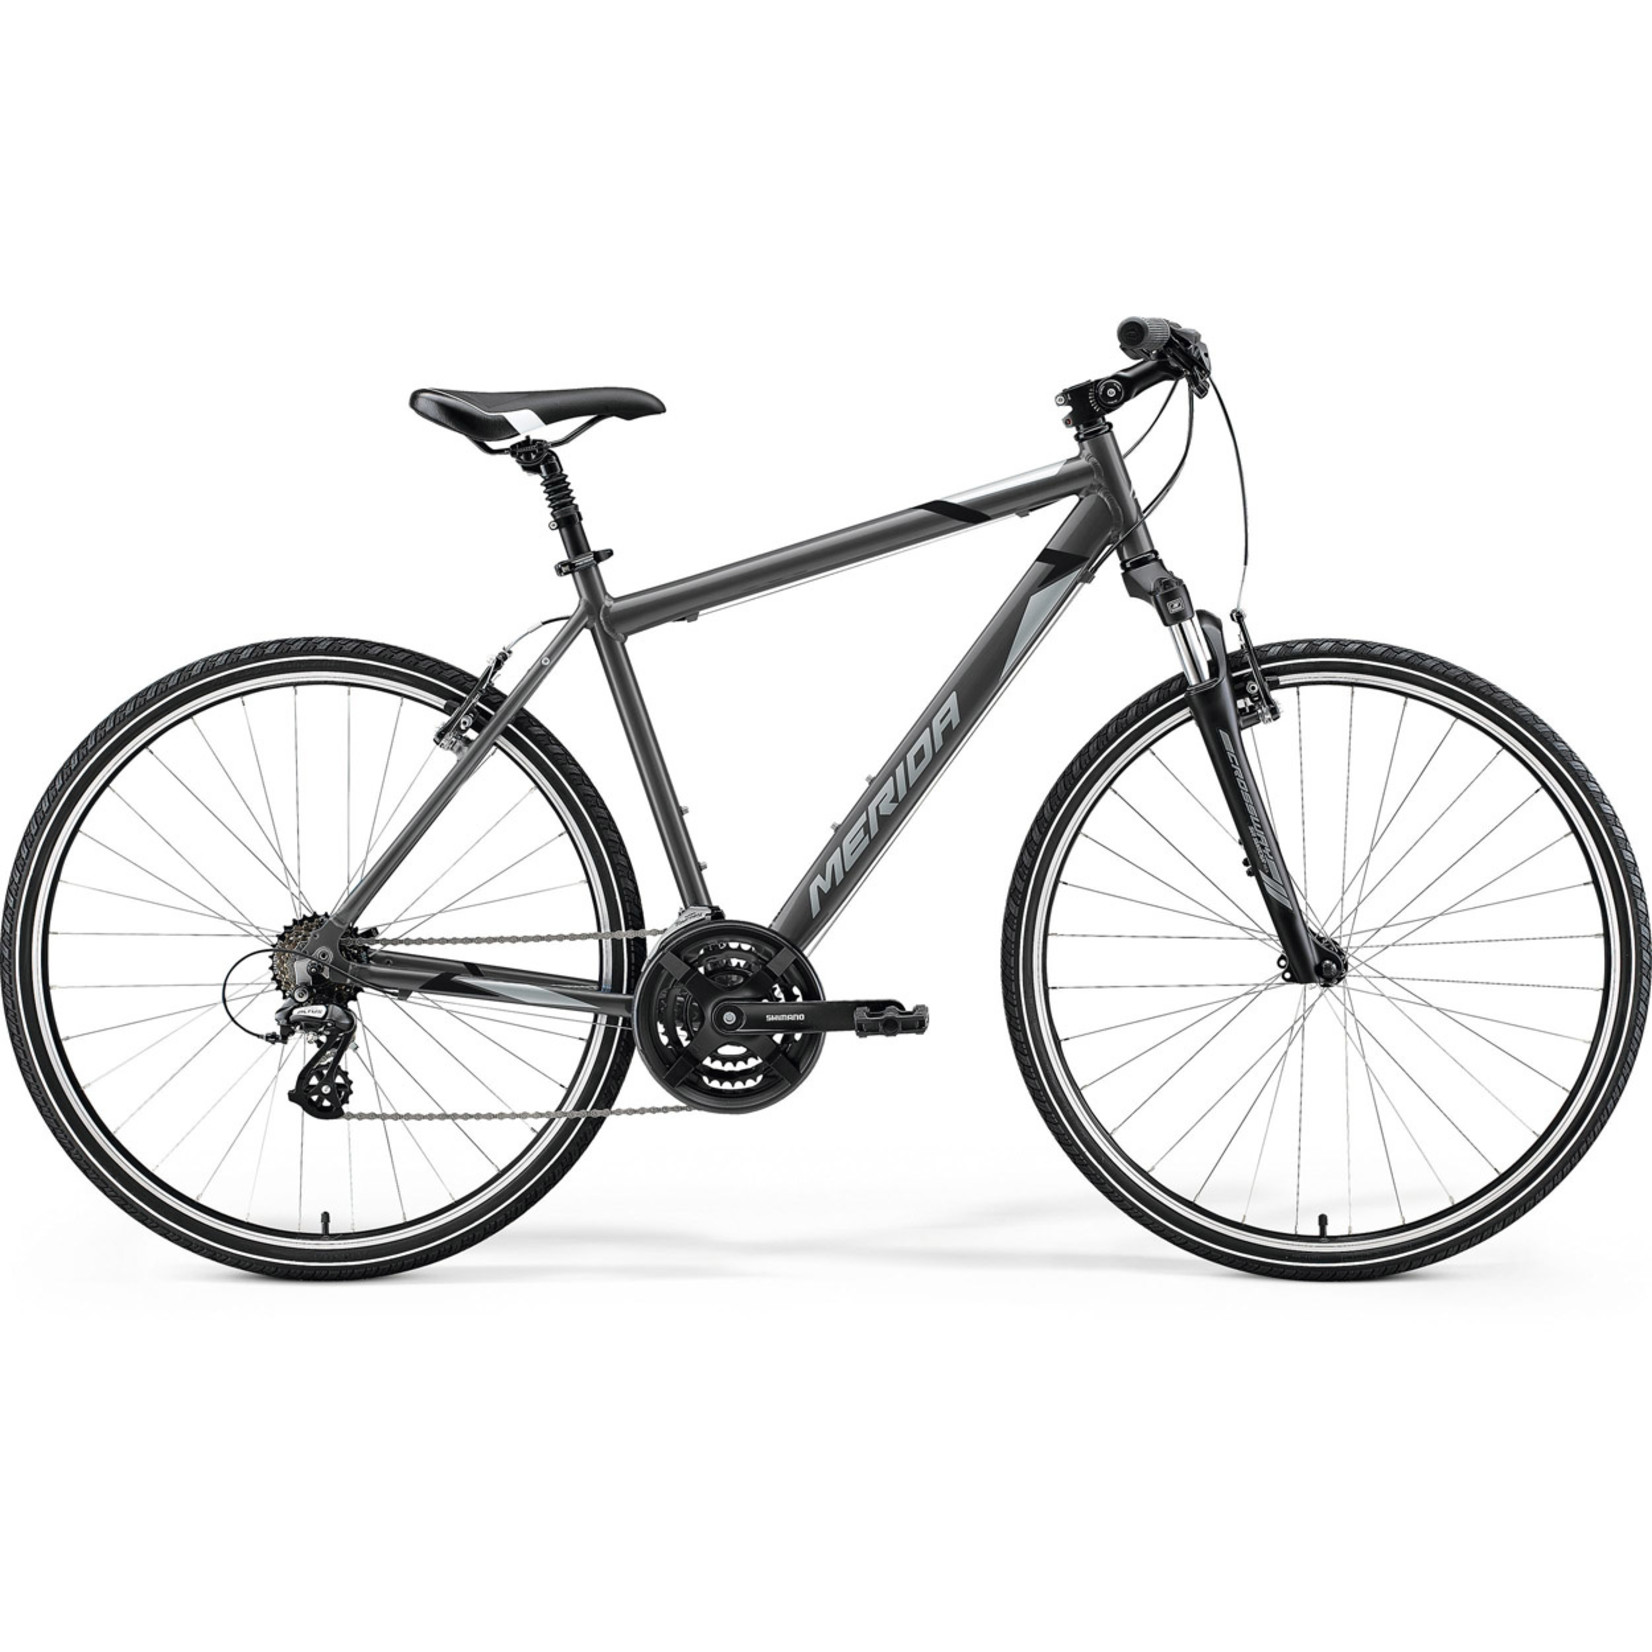 Merida Merida 2021 Crossway 10 V Hybrid Bike - Silk Anthracite(Grey/Black) - Medium/Large(52cm)